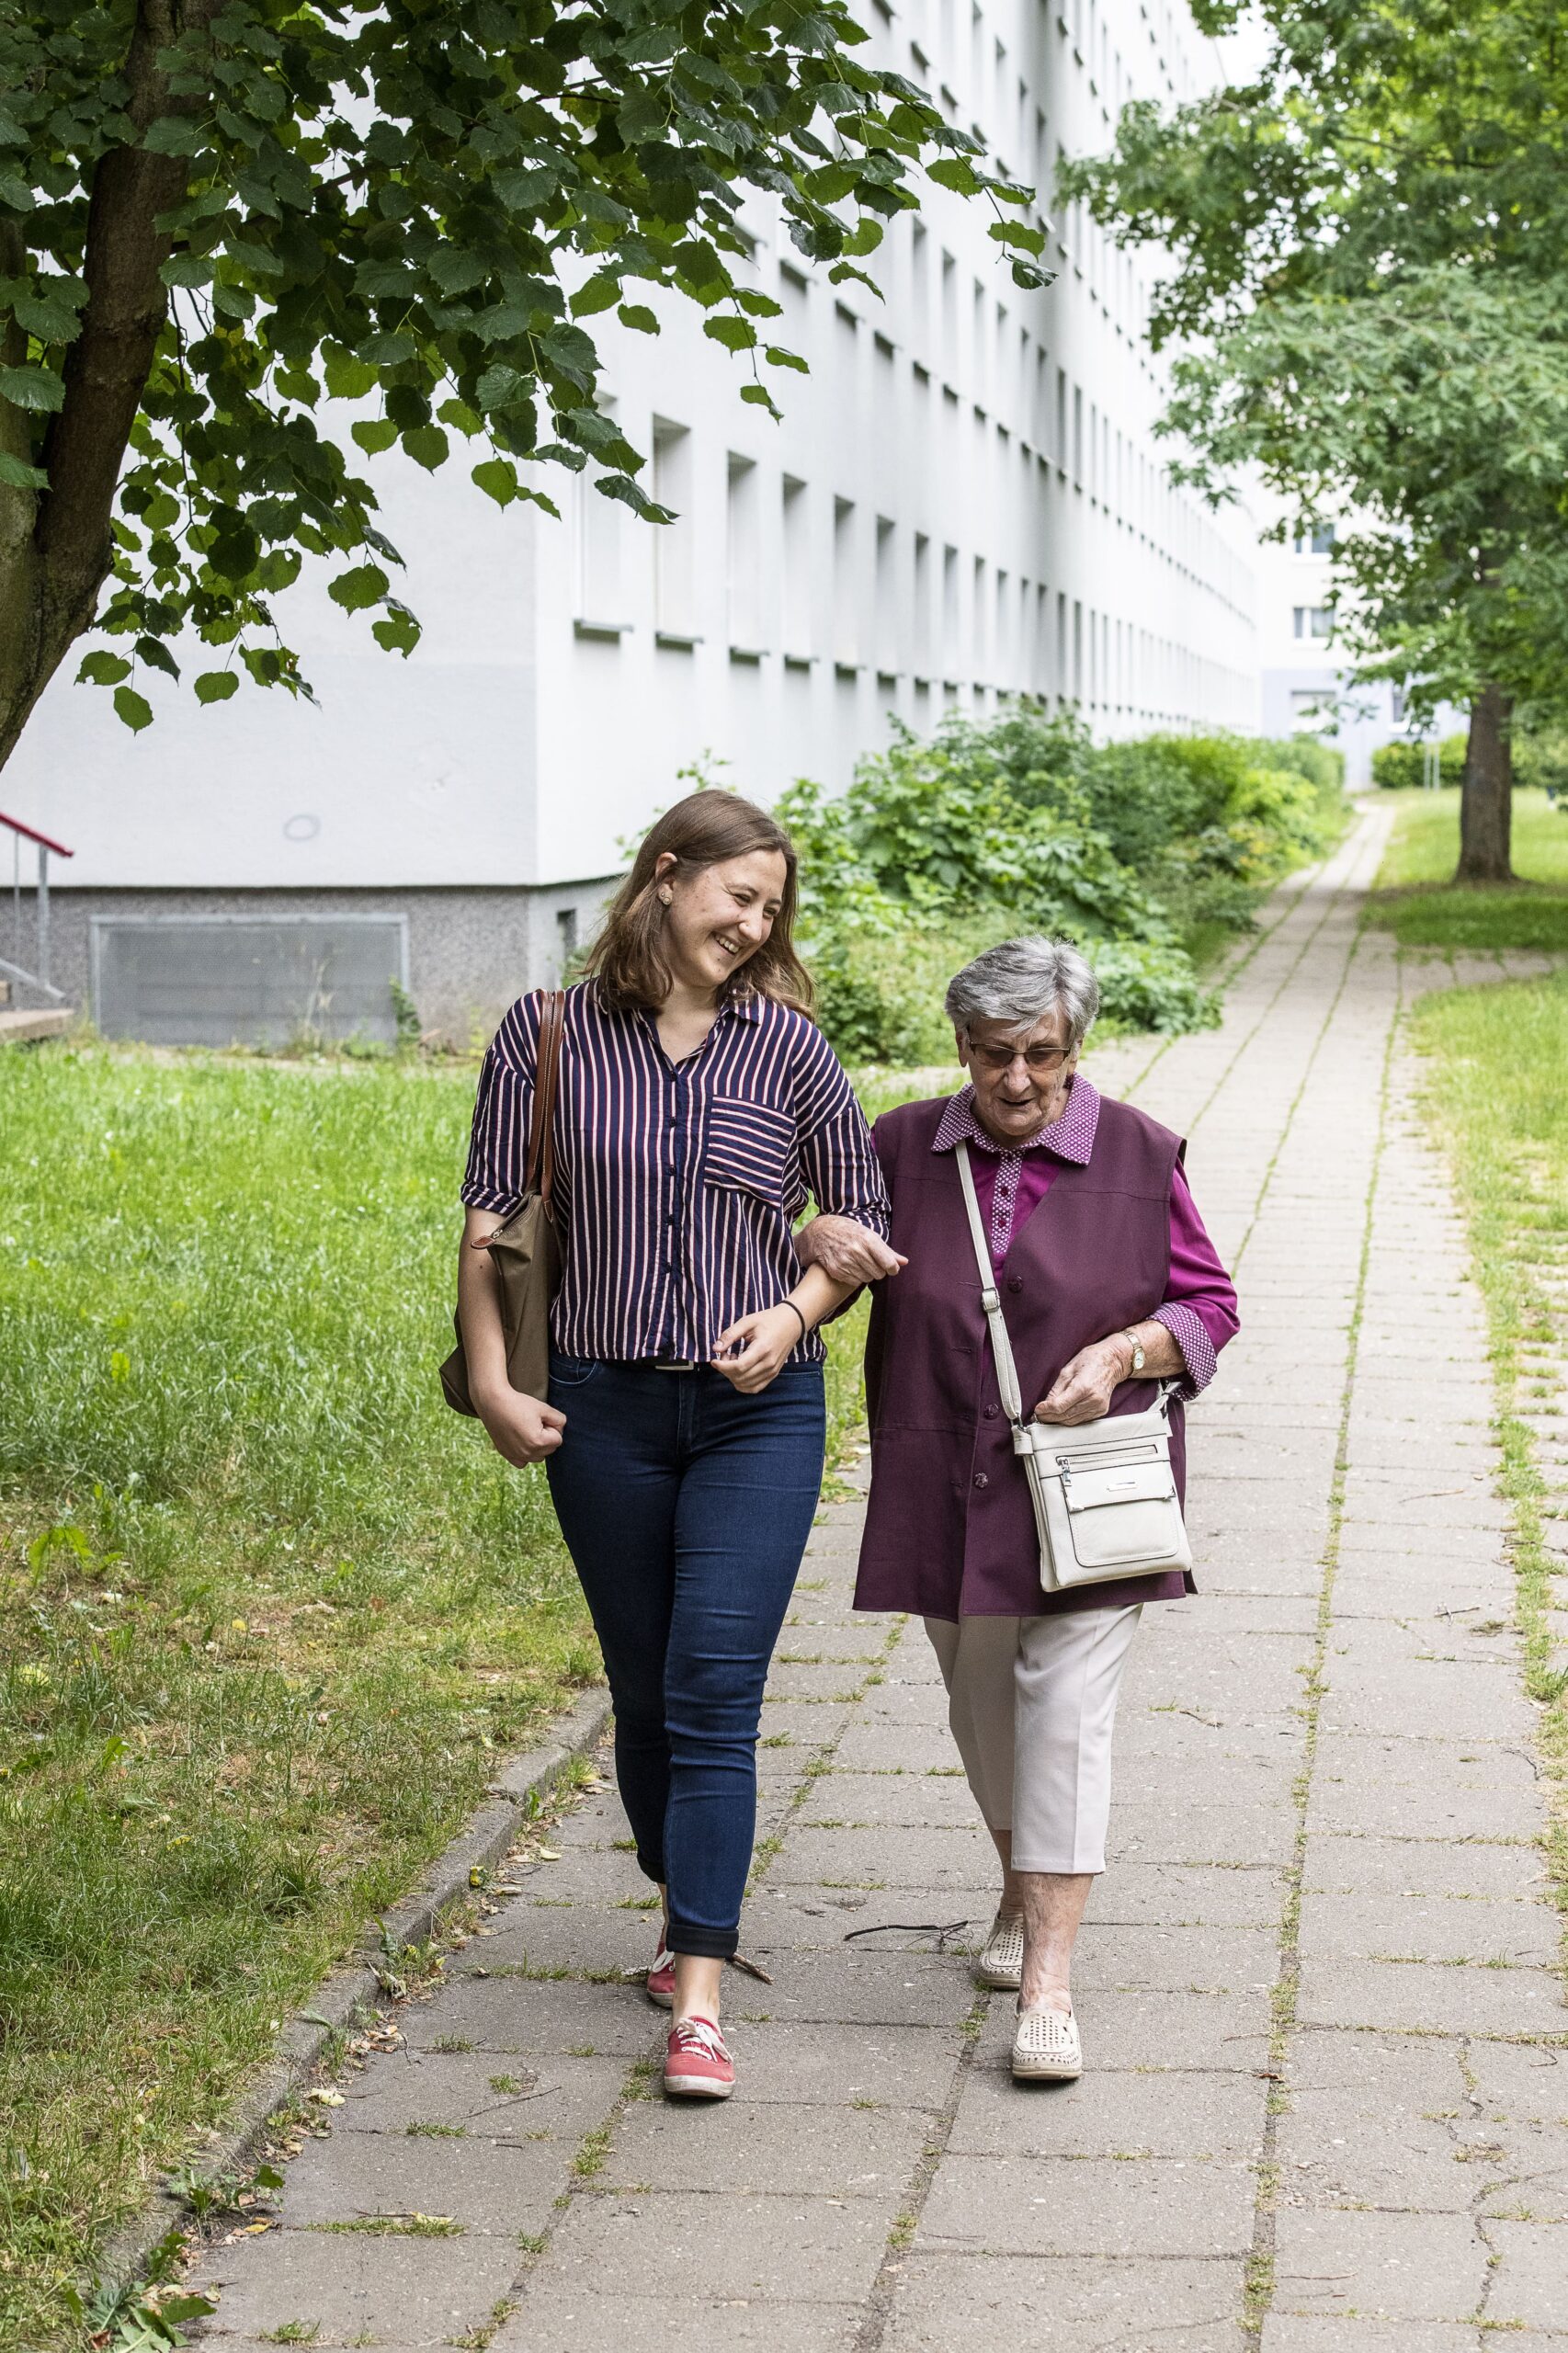 Eine junge Frau und eine ältere Frau laufen eingehakt einen Weg entlang und lächeln